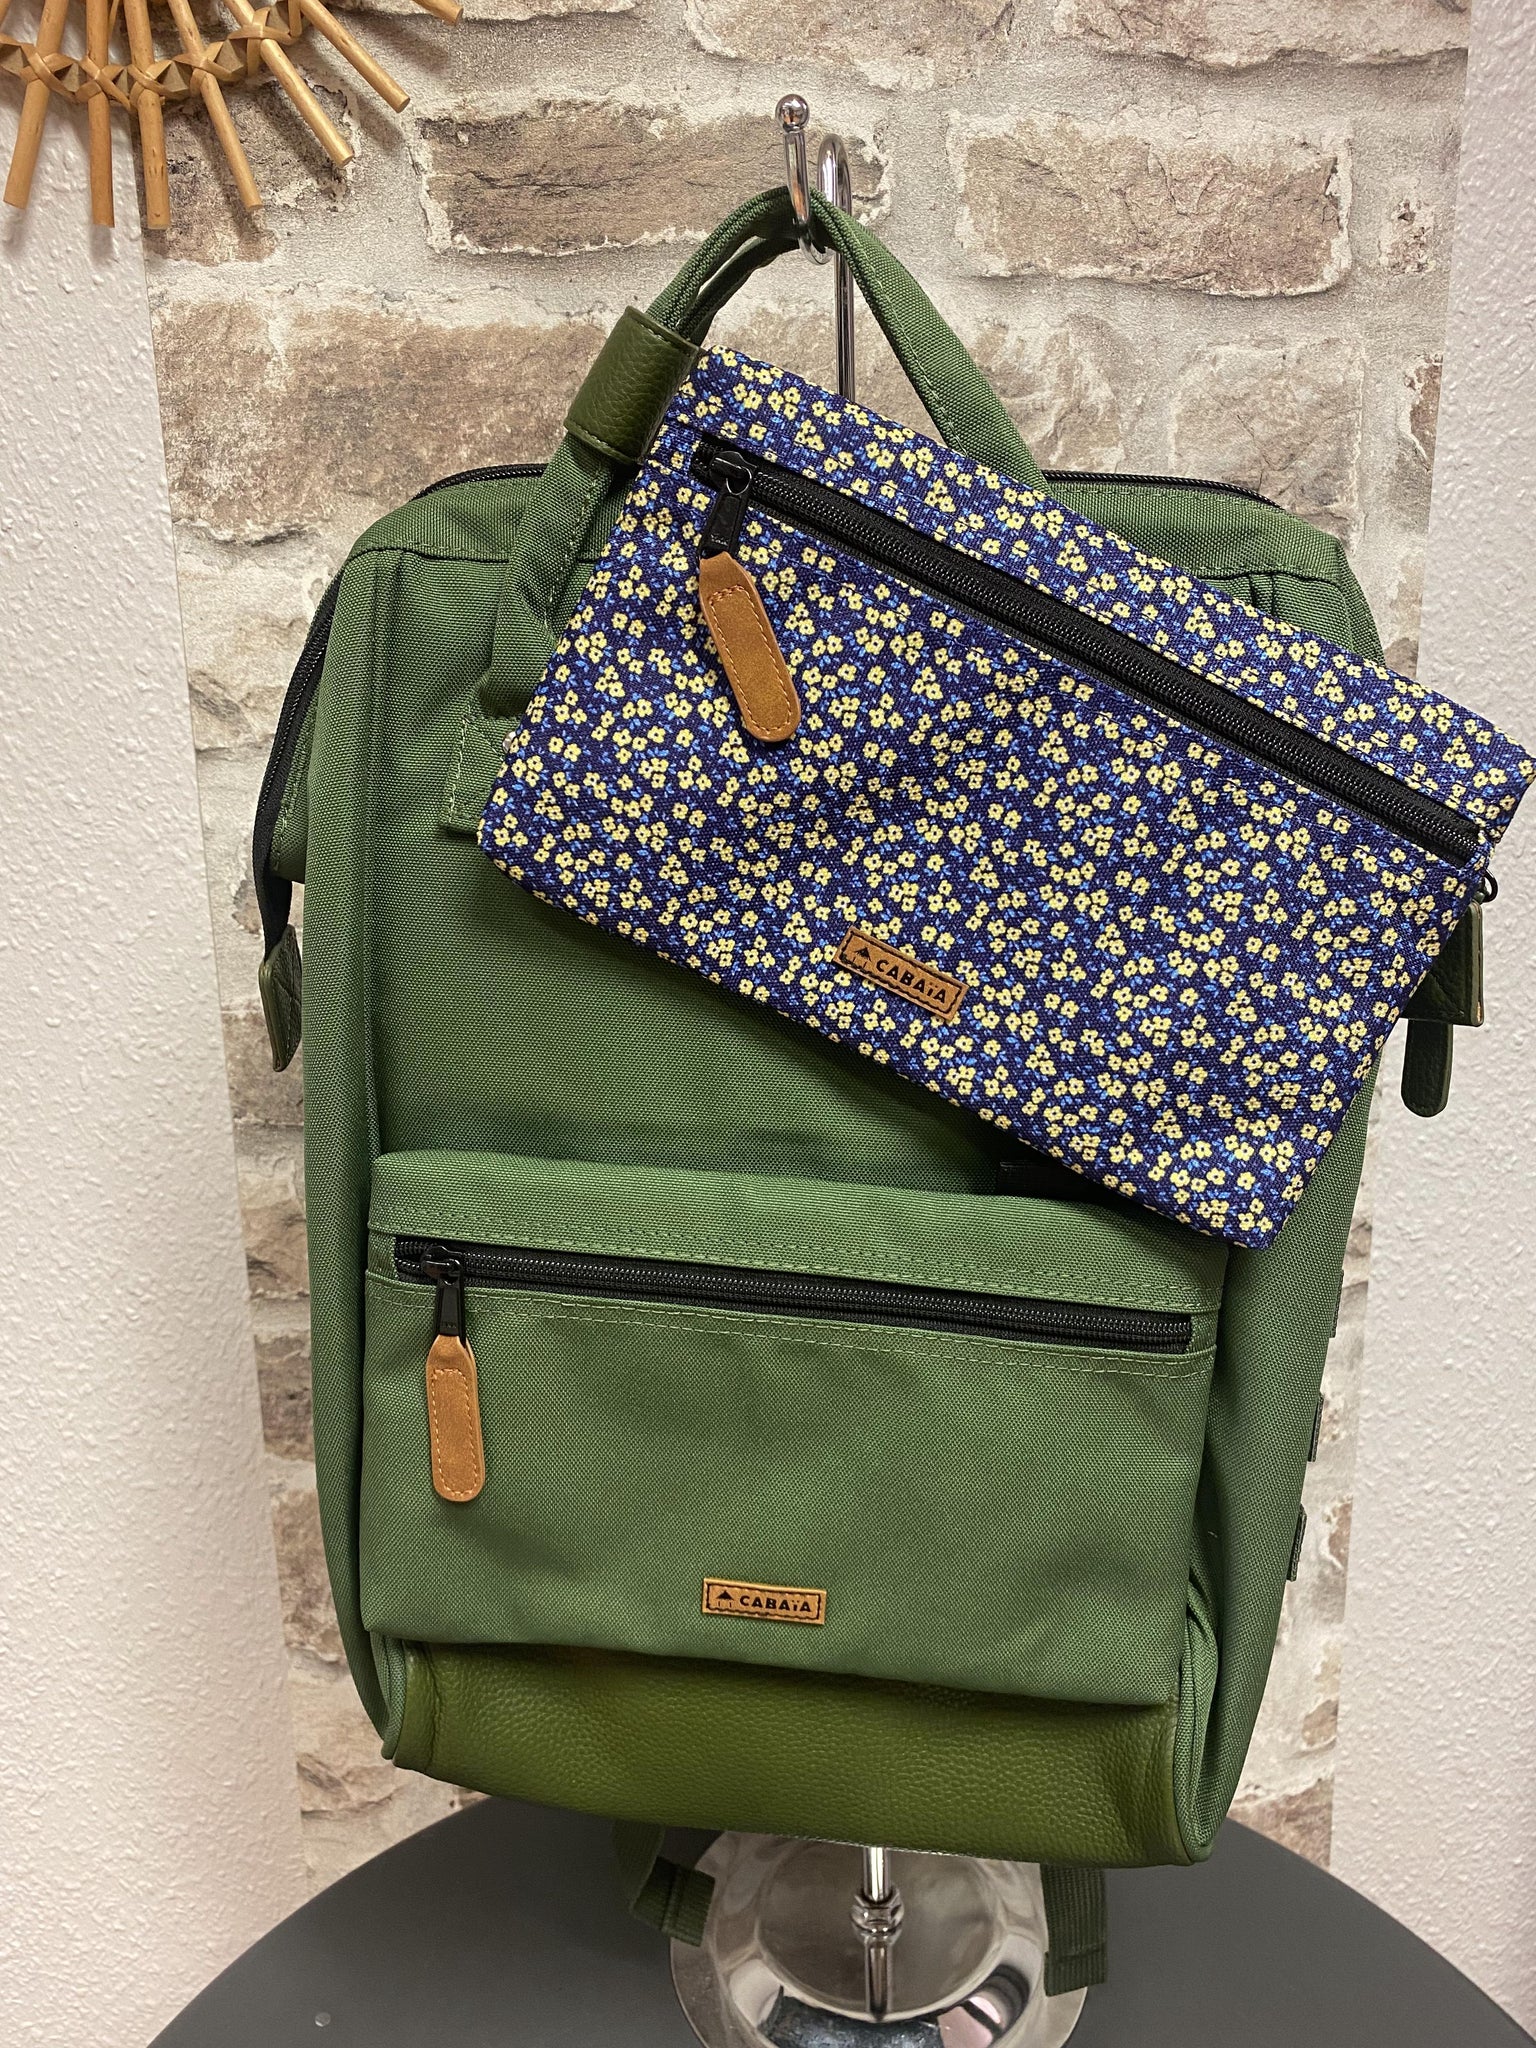 1 sac de voyage + 2 poches / CABAIA / Seoul / Couleur : vert